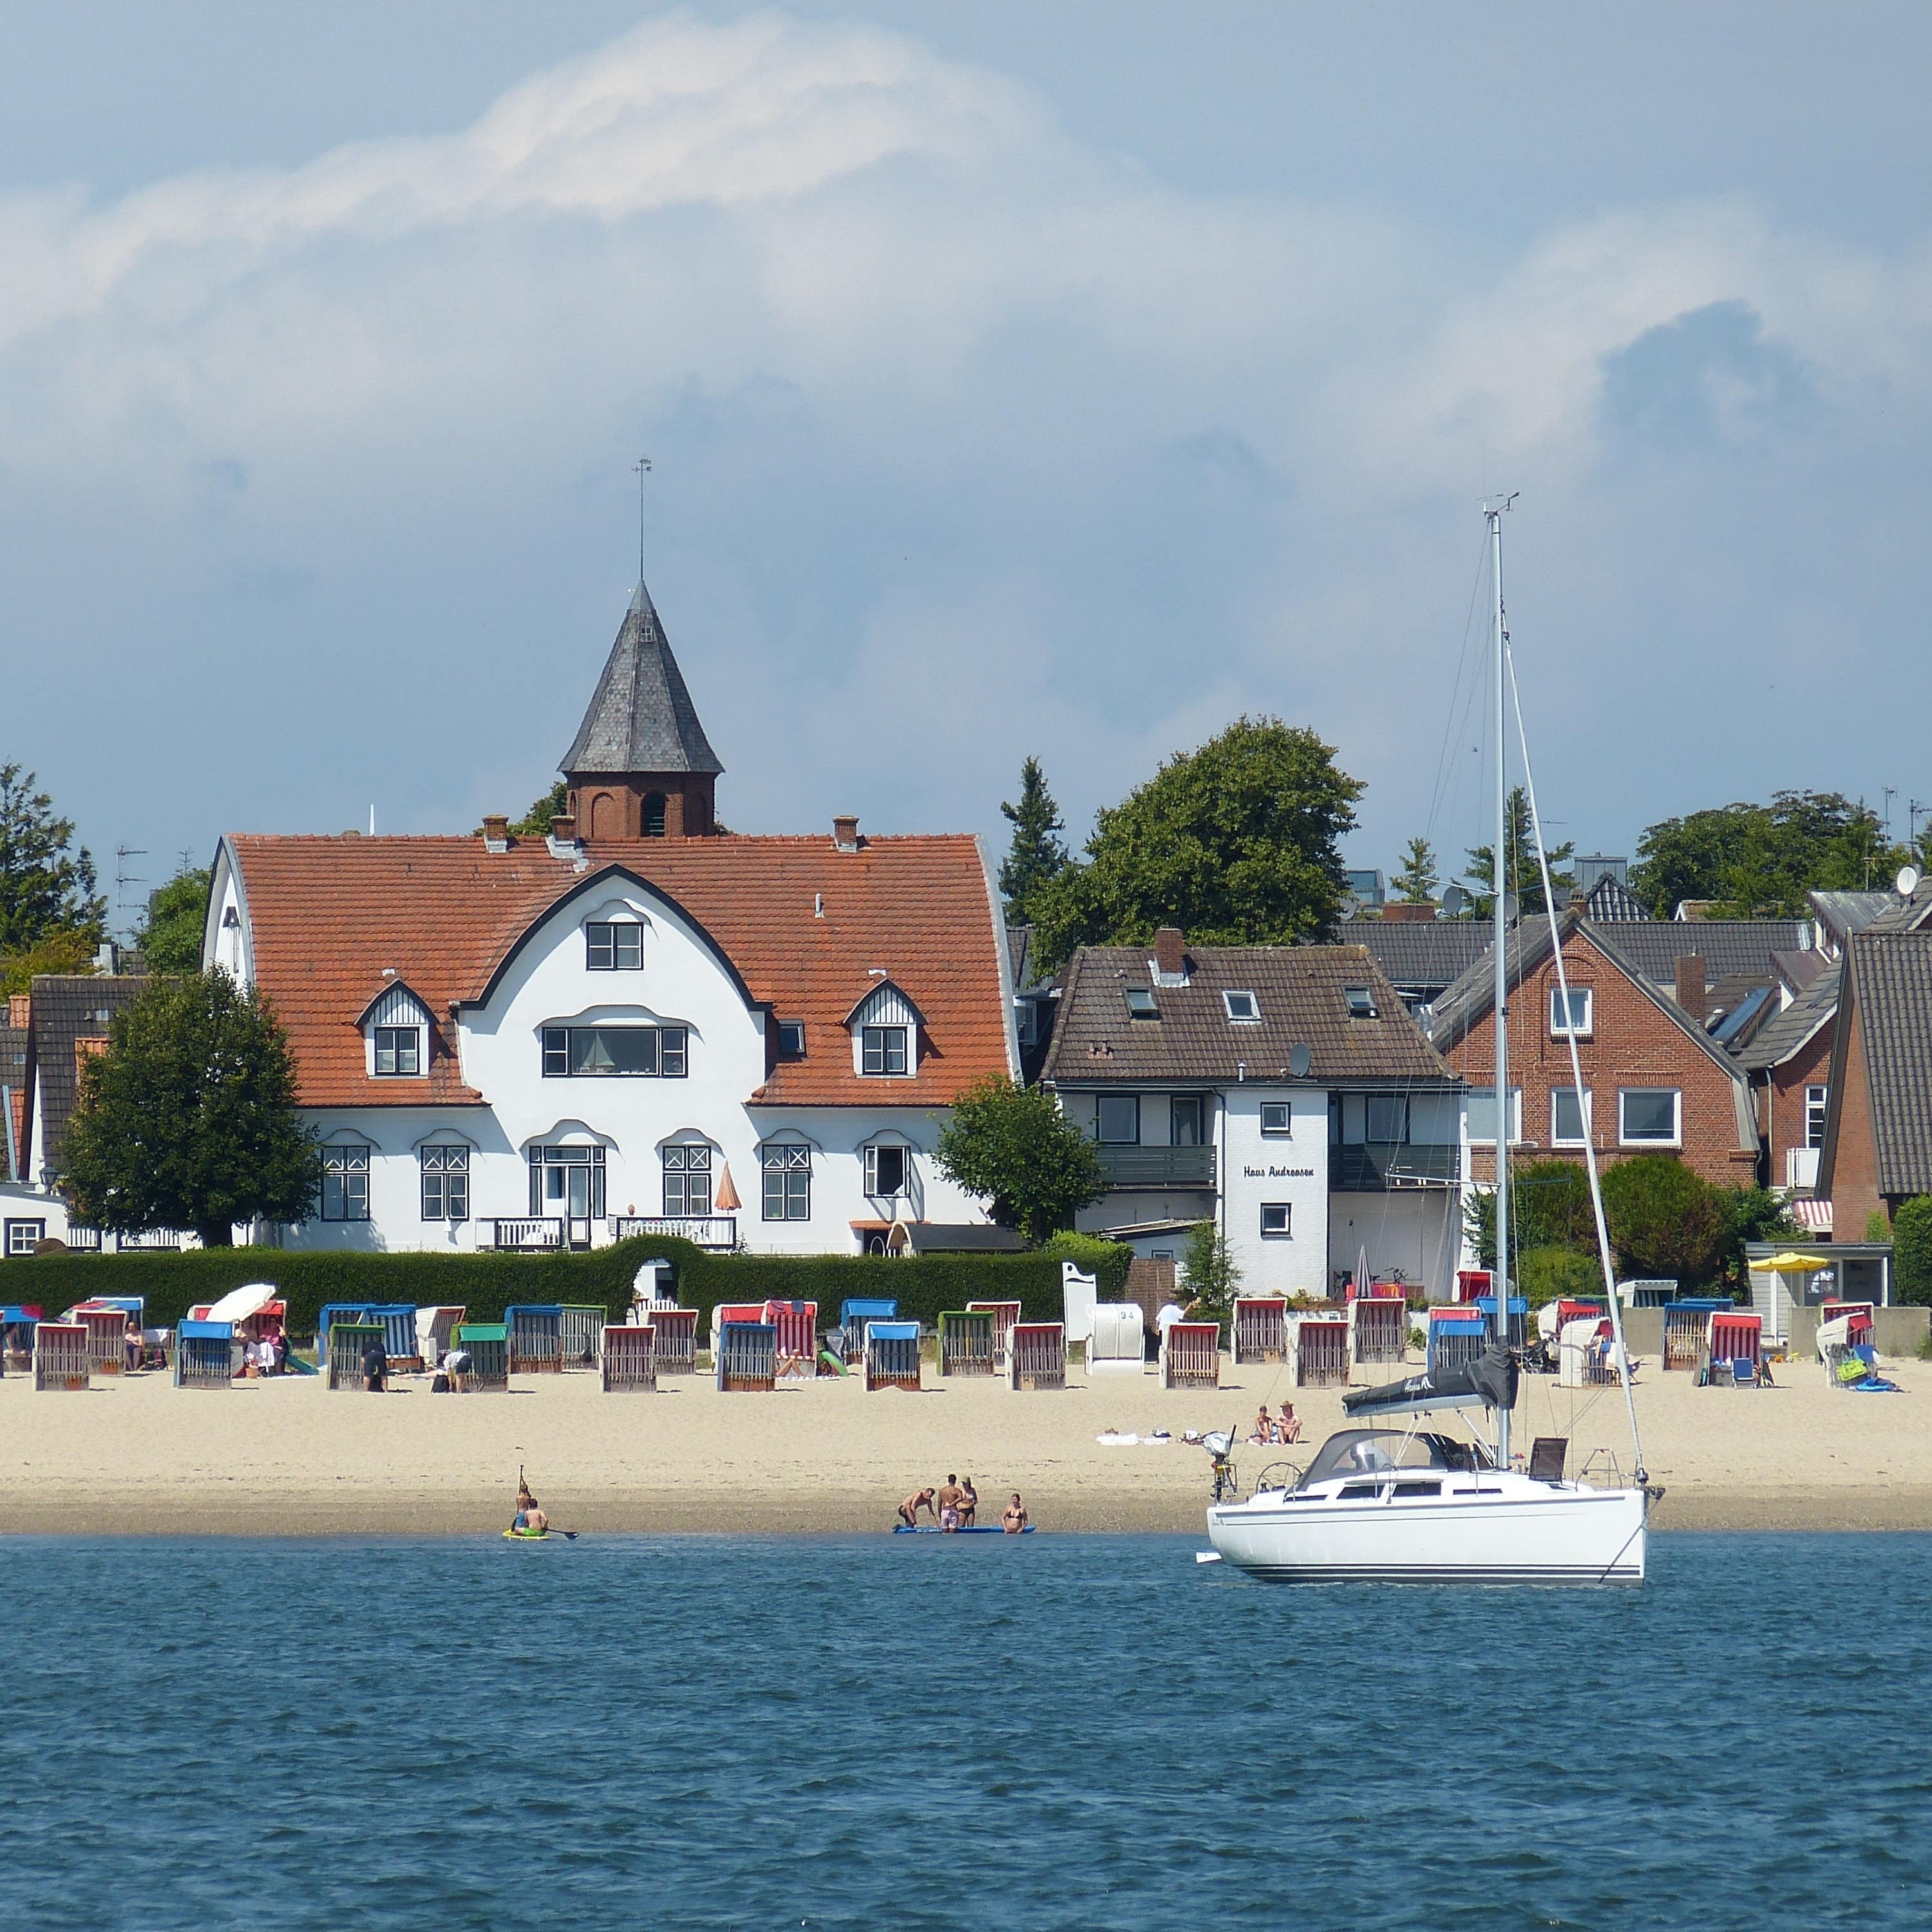 Ihr Ferienhaus auf Föhr – Urlaub auf der grünen Insel